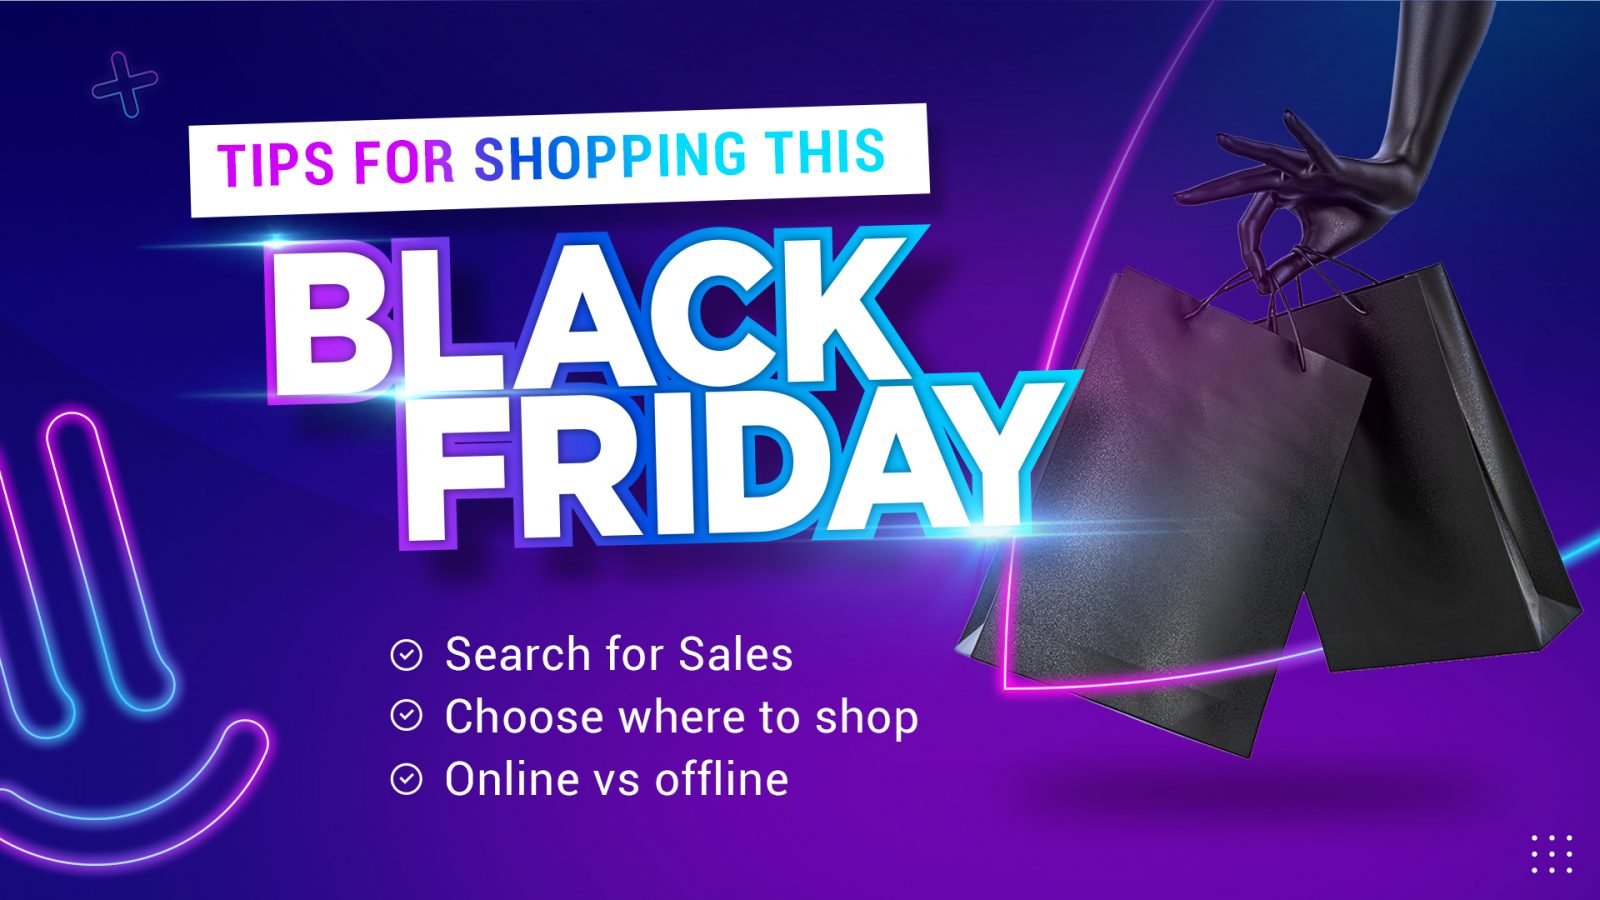 Shopping tips for Black Friday